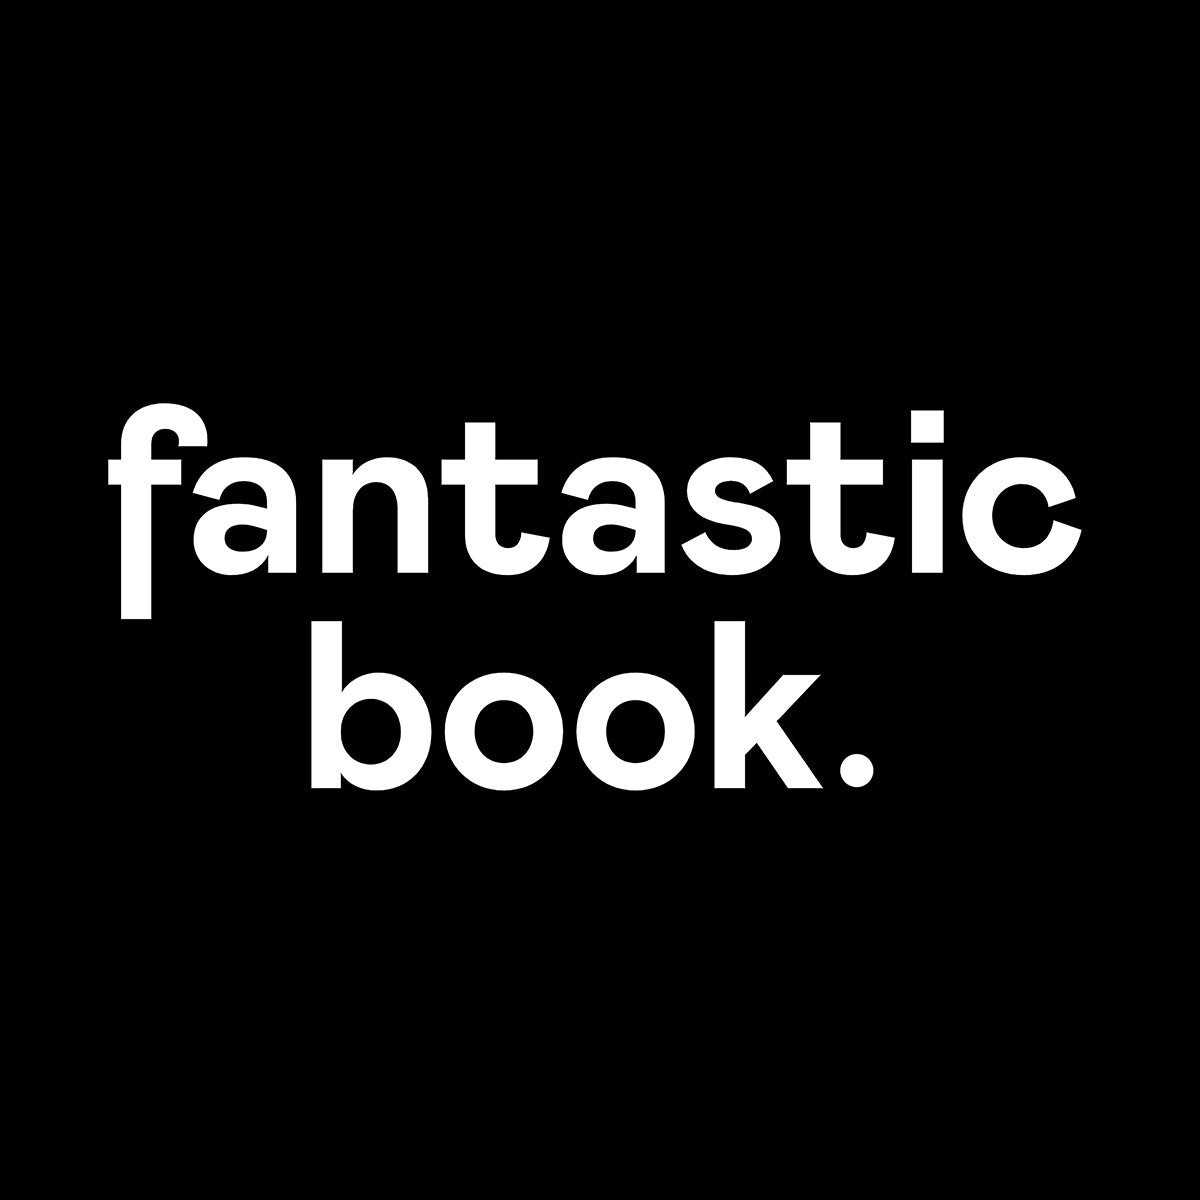 fantasticbook. for Shopify